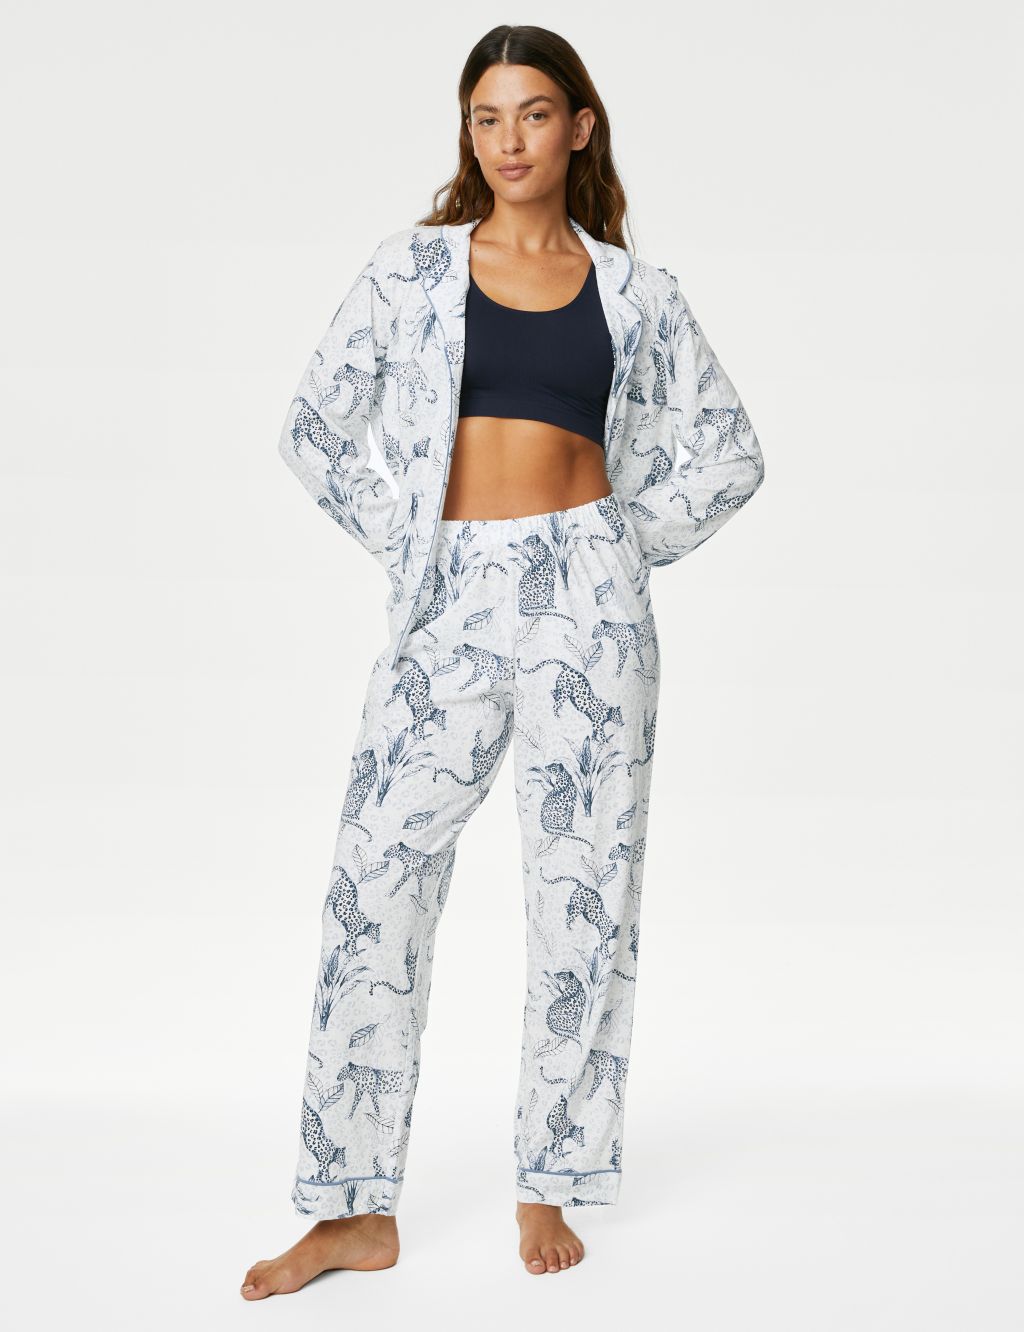 Leopard Print Pyjama Set image 1